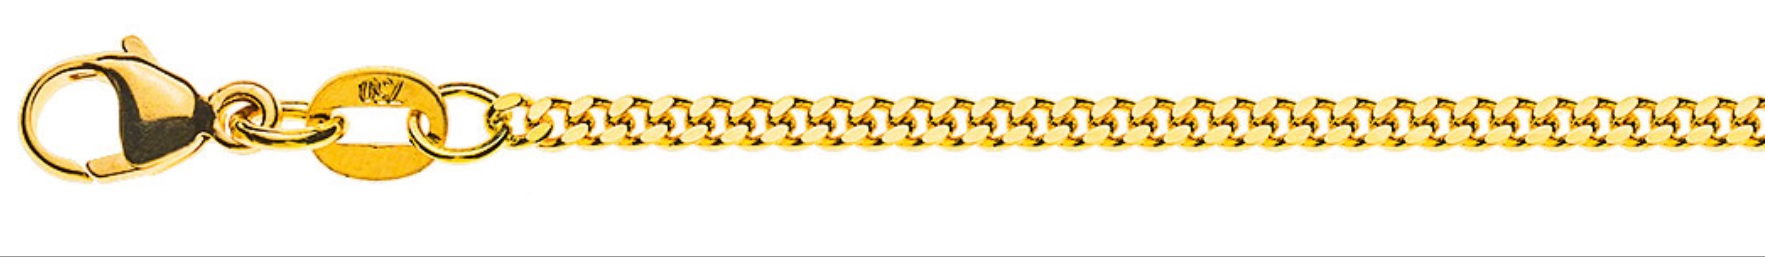 AURONOS Prestige Halskette Gelbgold 18K Panzerkette geschliffen 40cm 2.0mm